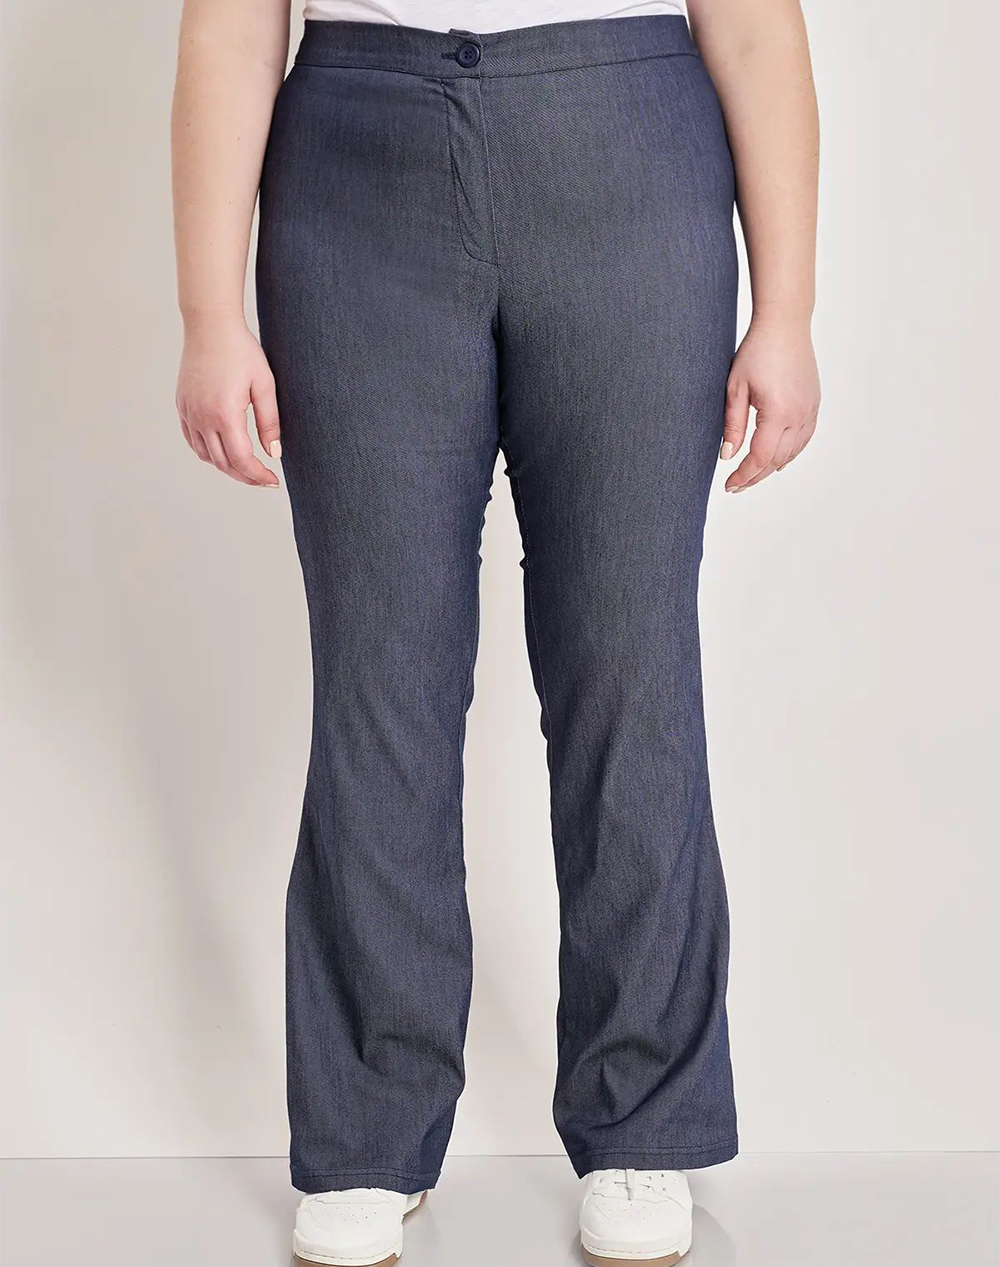 PARABITA Pantaloni faux jeans